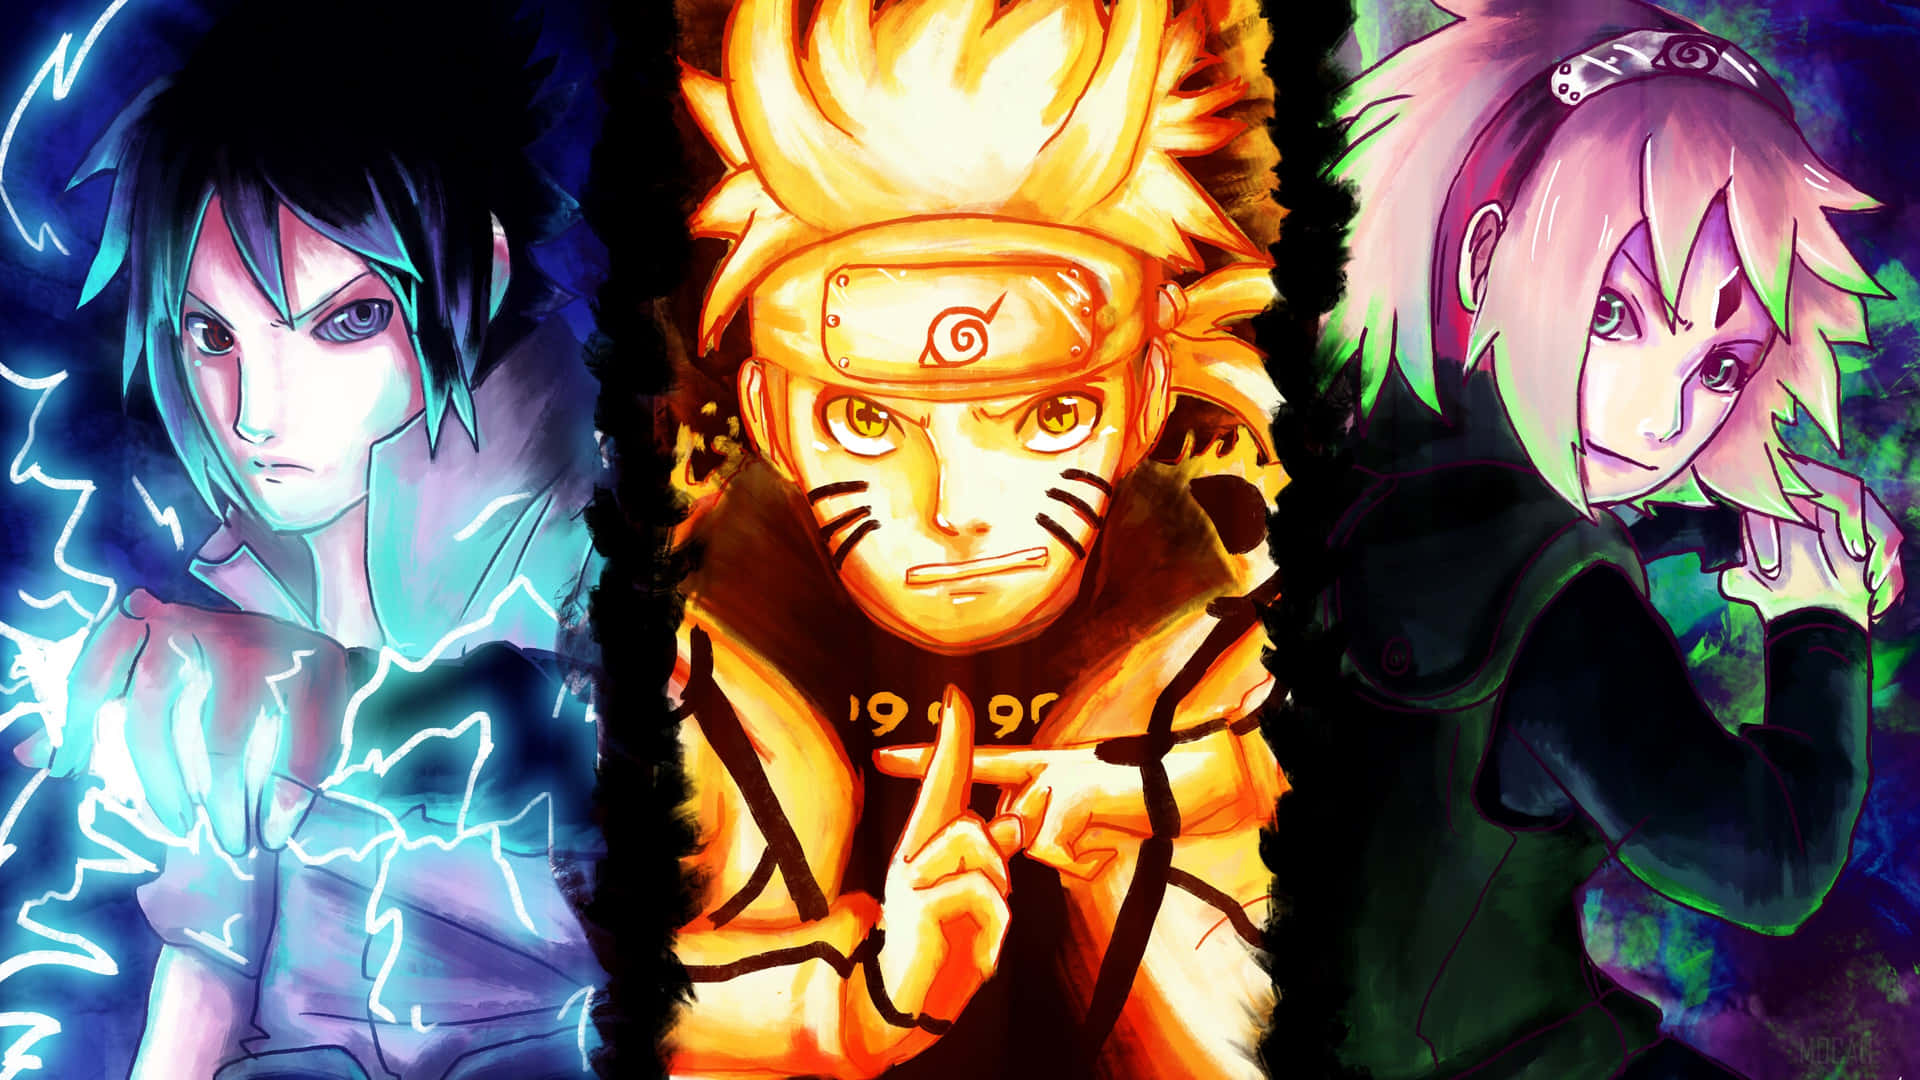 Naruto Uzumaki - một trong những nhân vật phổ biến nhất trong thế giới Anime. Với những hình ảnh thú vị và phong cách, bạn sẽ hoàn toàn bị cuốn vào thế giới Naruto, nơi mà những điều phi thường và bí ẩn đang chờ đợi bạn khám phá. Nếu bạn là một fan của series Naruto, đừng bỏ lỡ cơ hội để tận hưởng những hình ảnh độc đáo liên quan đến Naruto Uzumaki này.